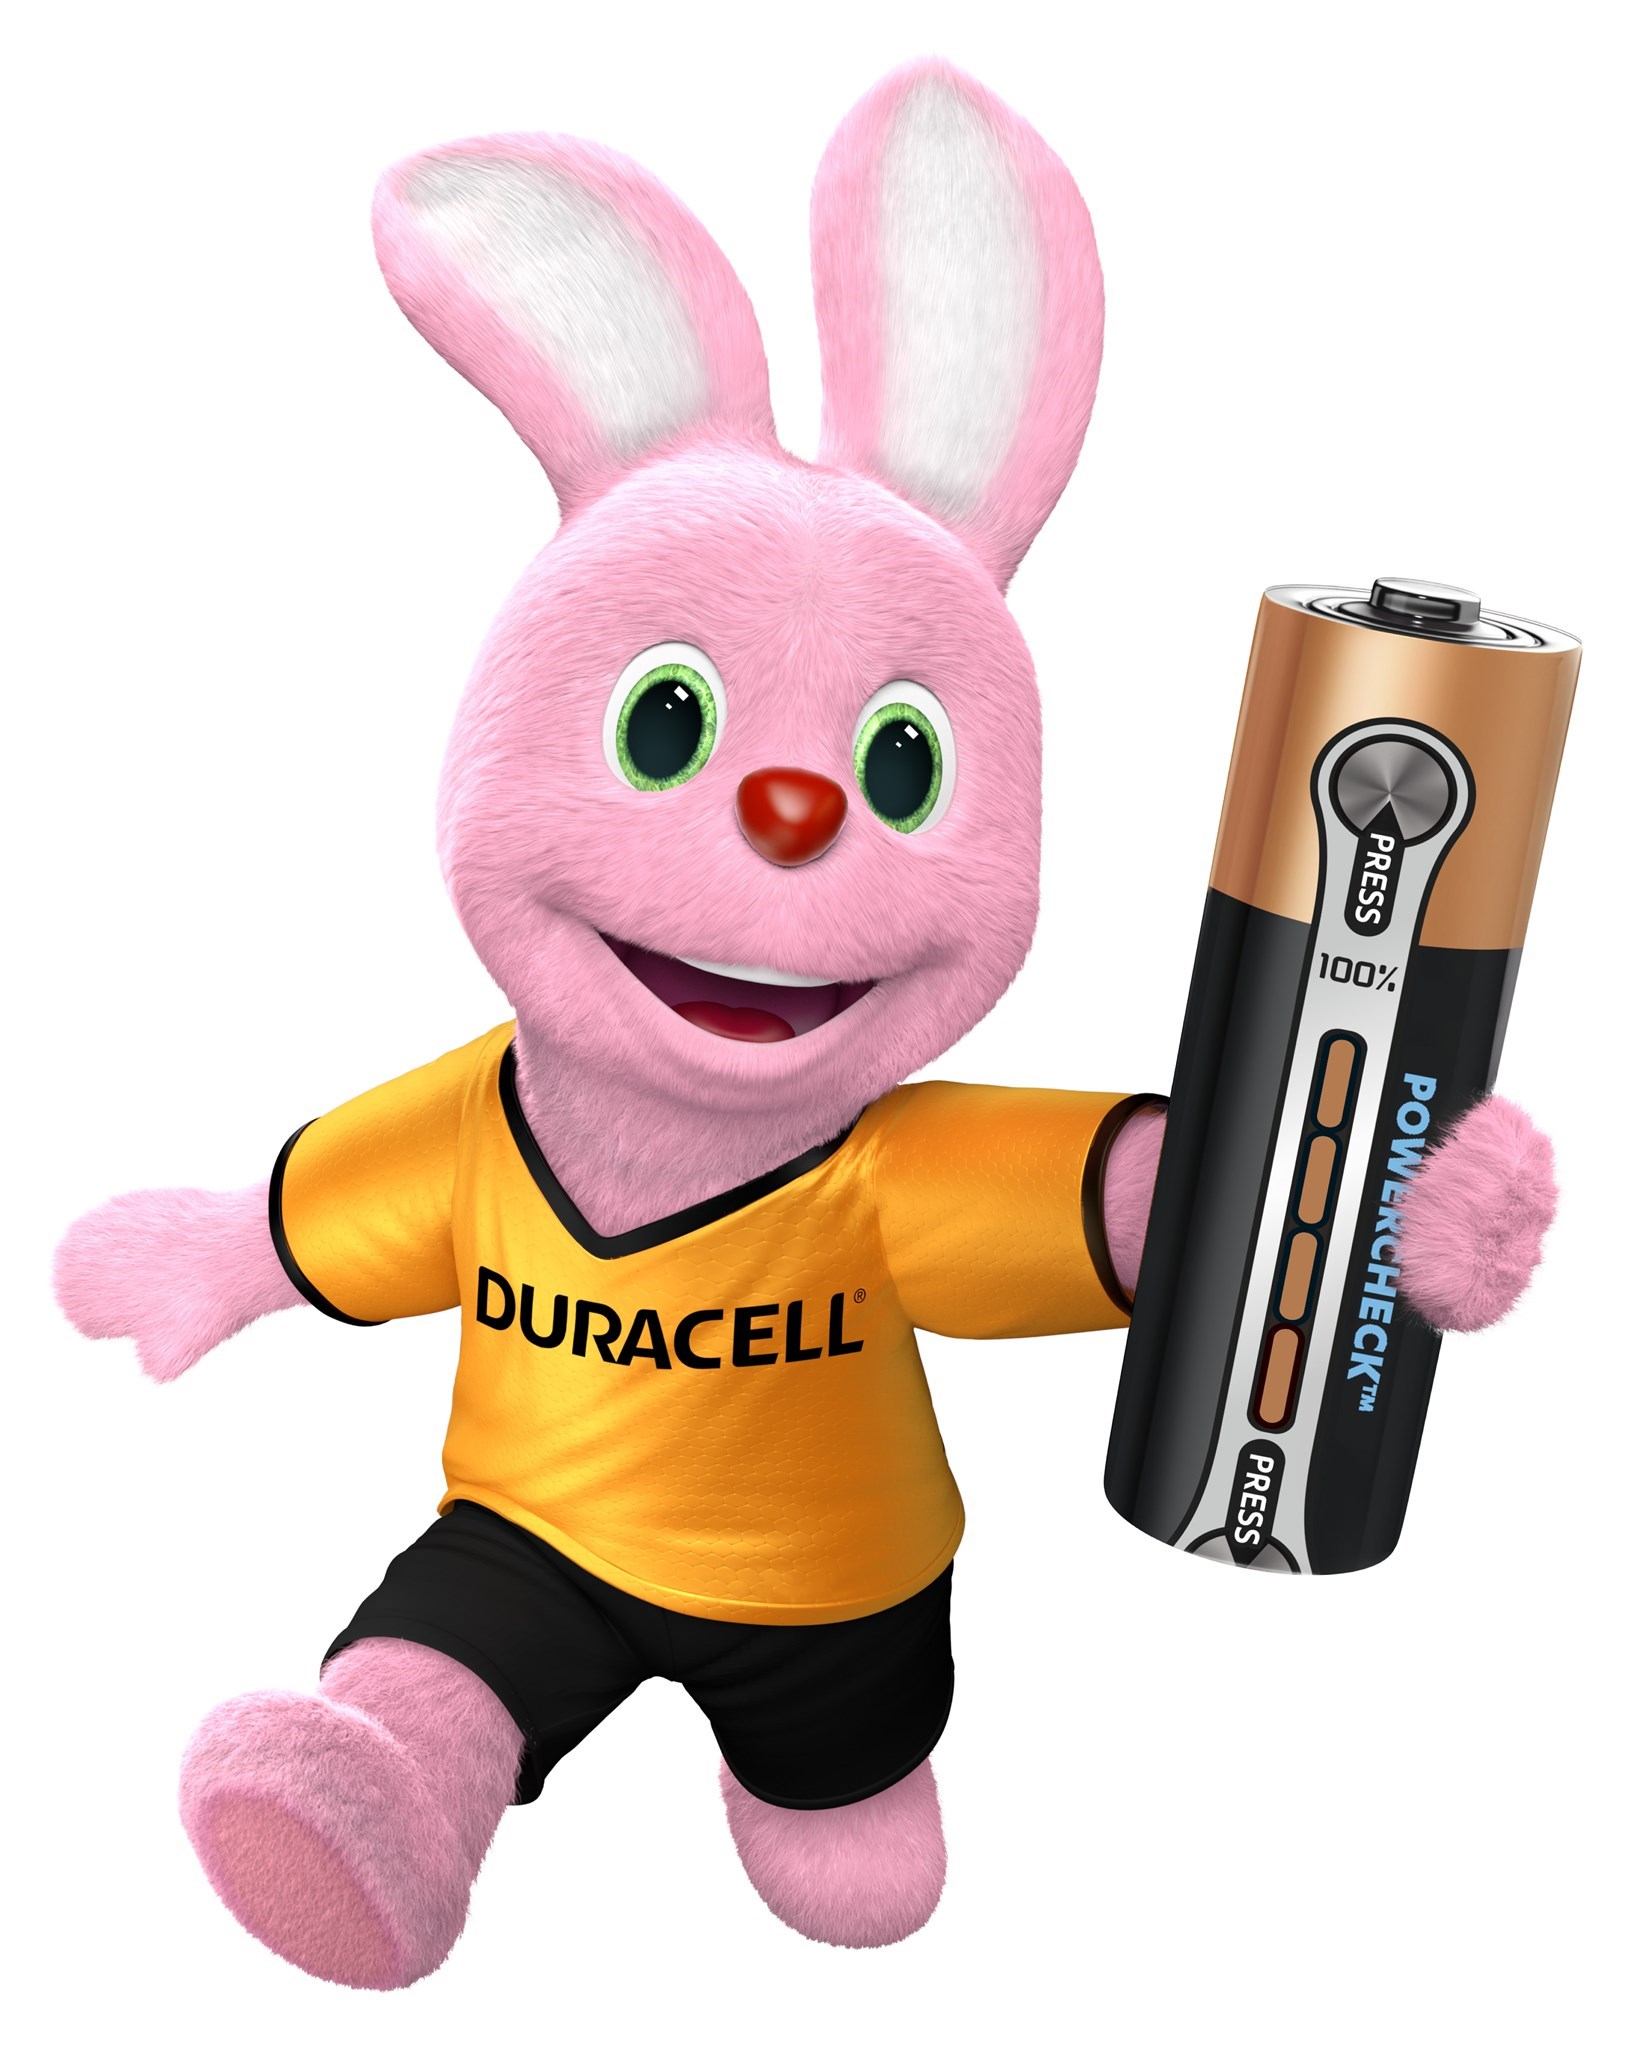 Bild für Kategorie Duracell - Batterien